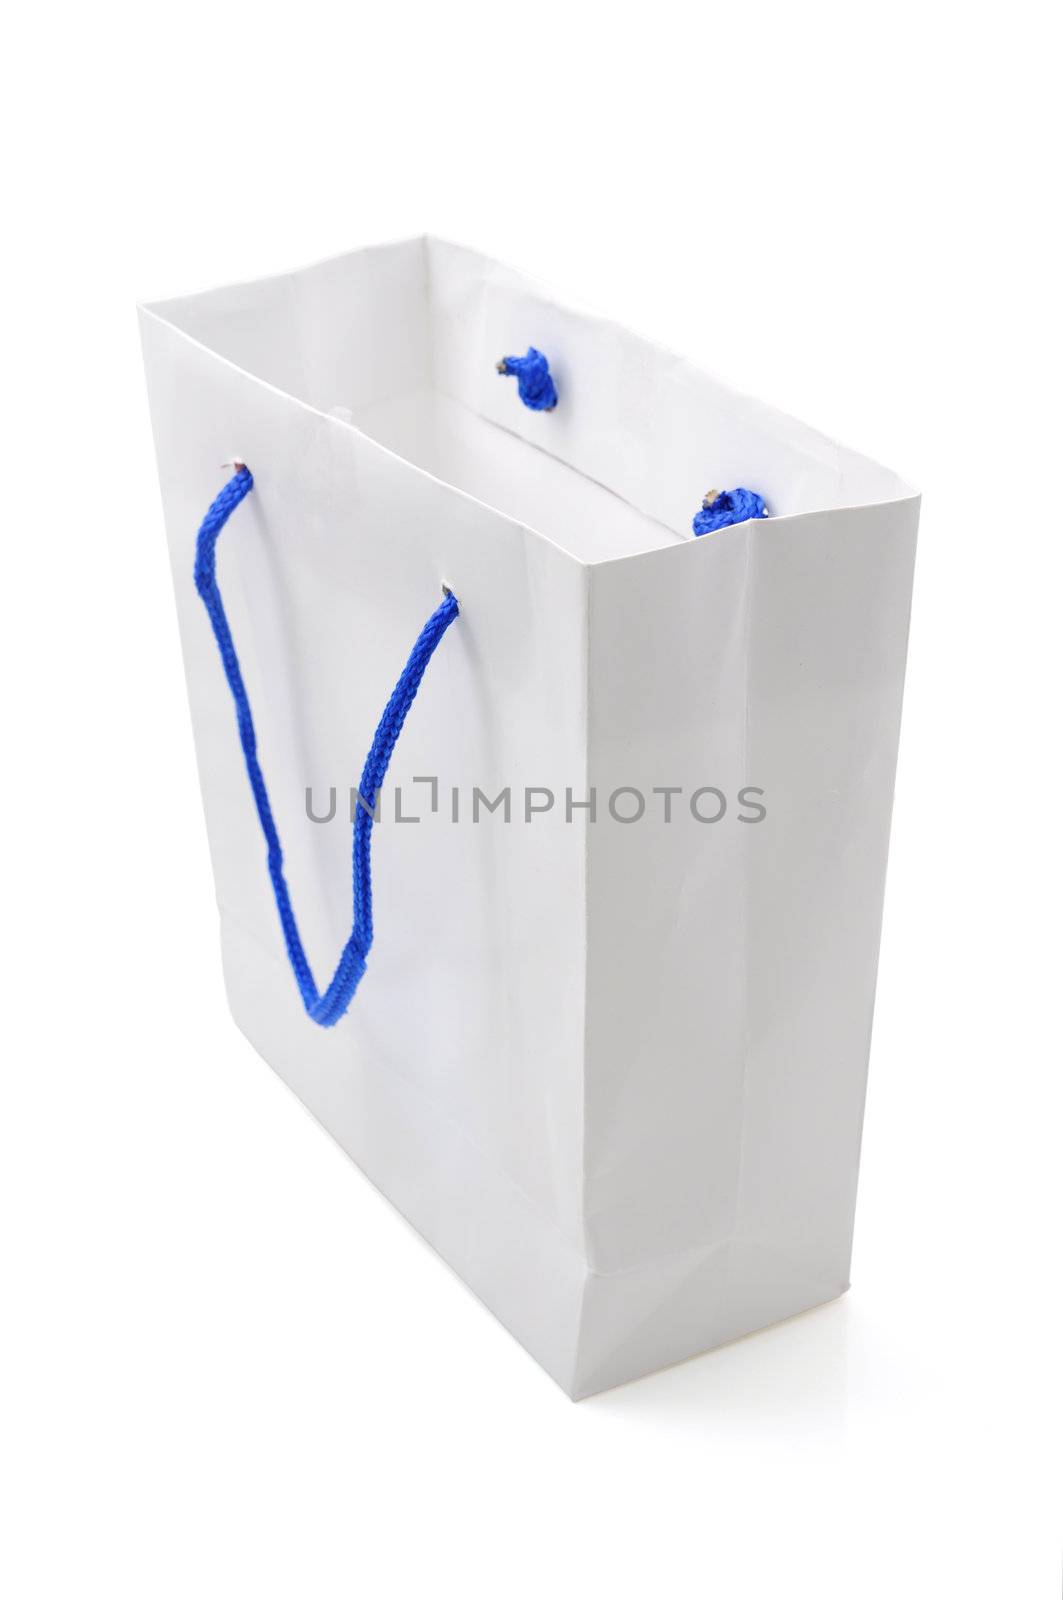 Paper bag2 by antpkr